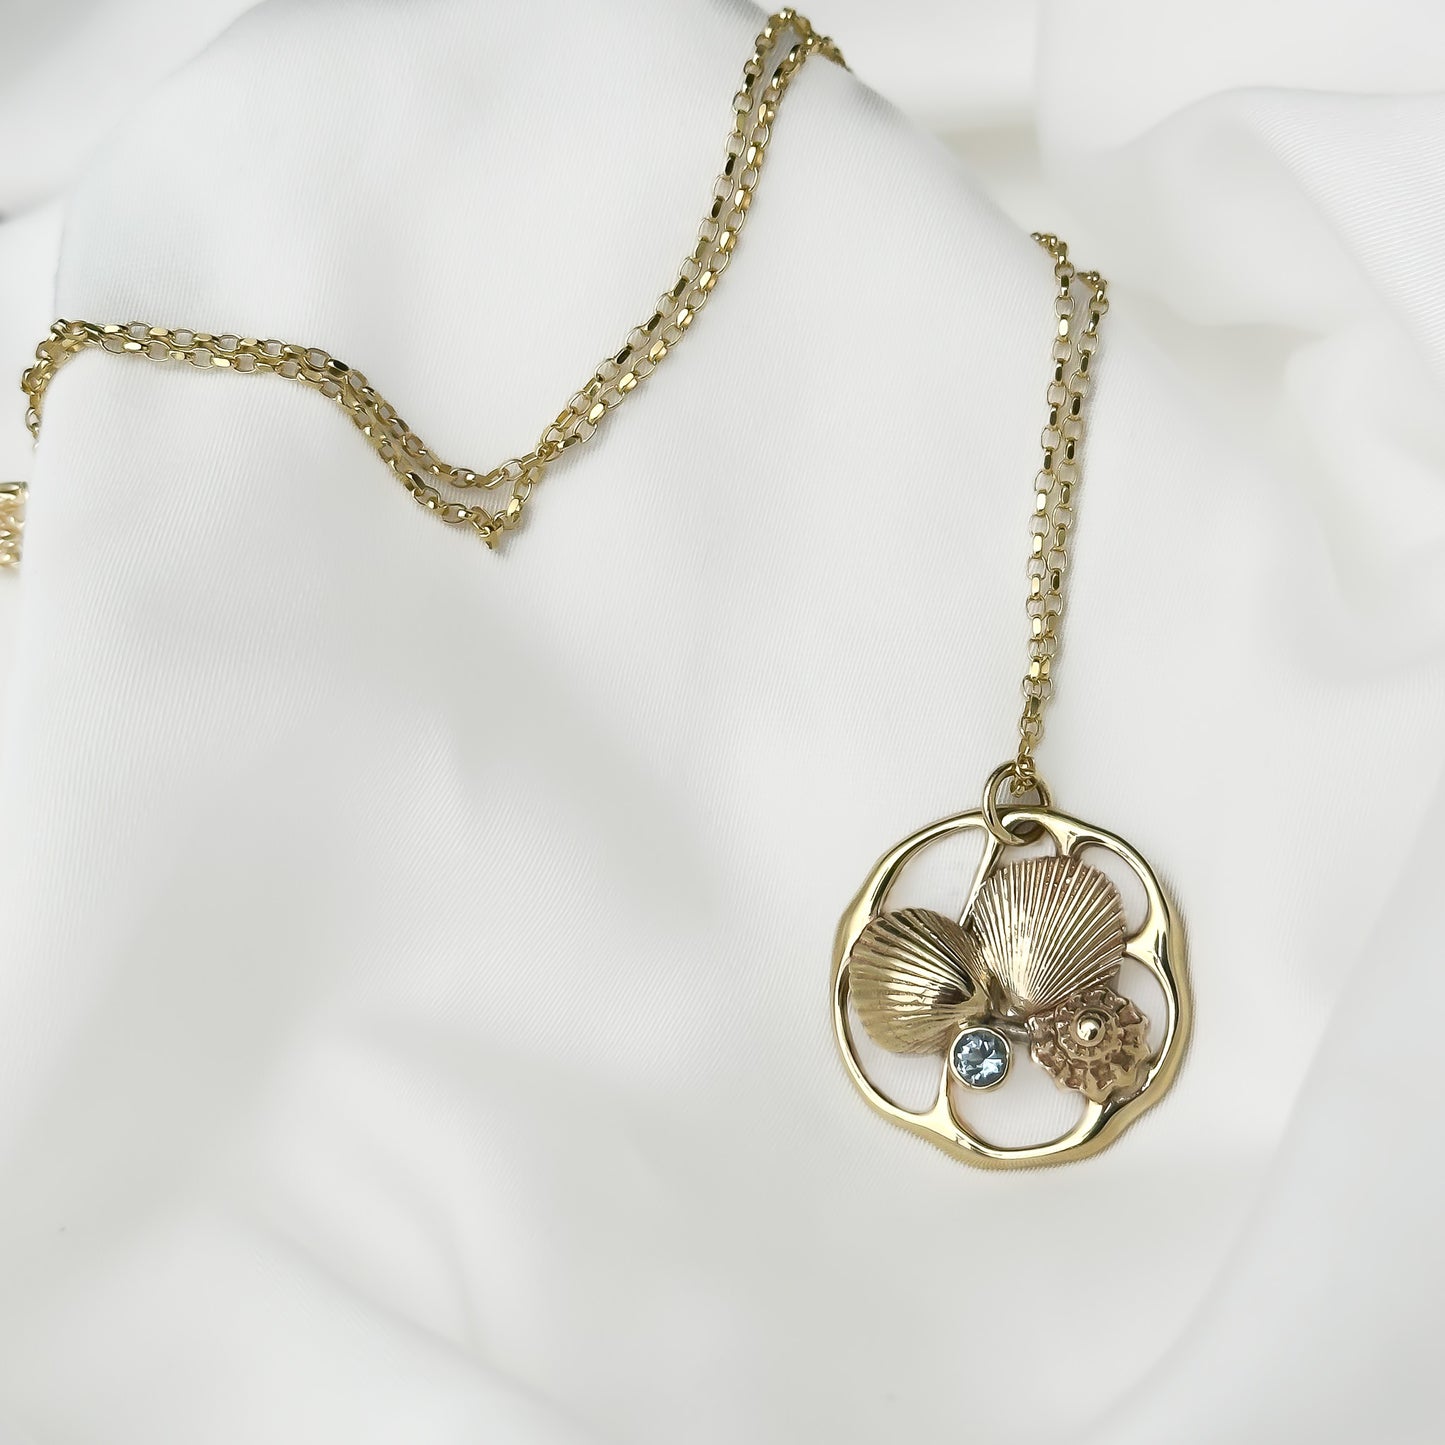 Beachcomber Gold Aquamarine Pendant Necklace - No. 1